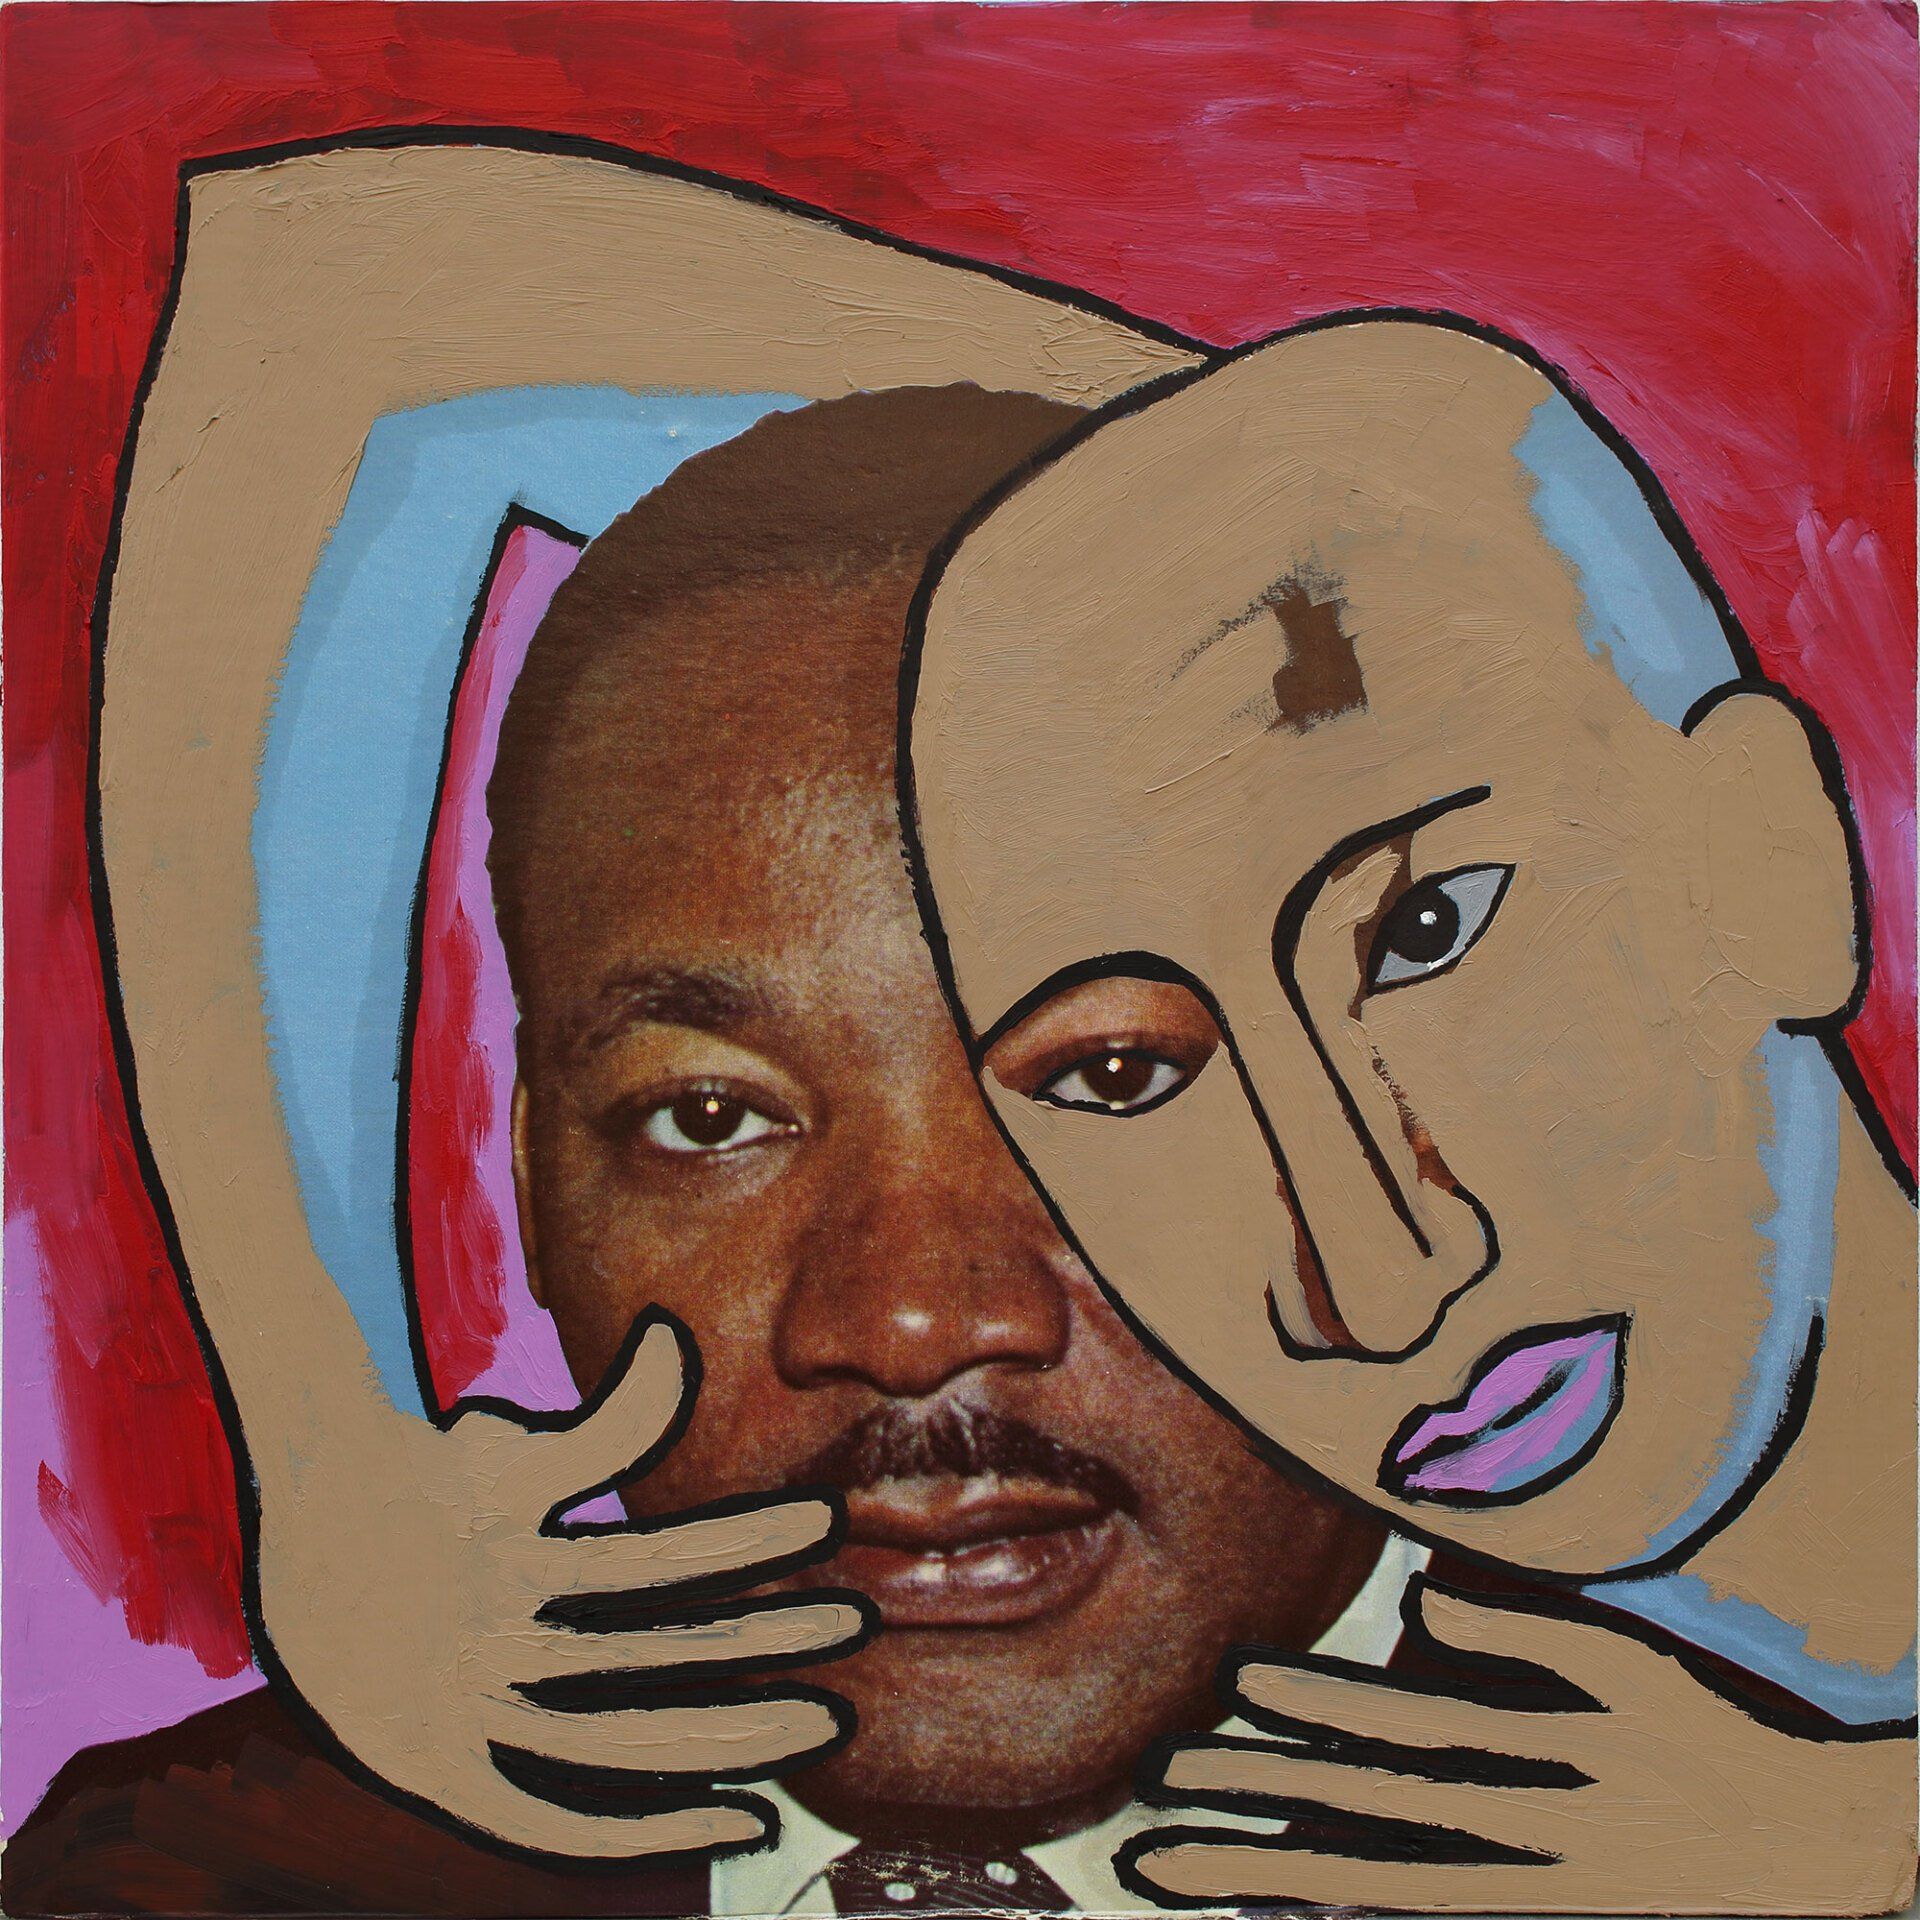 „Ghost Rider No. 23“ (Martin Luther King Jr.) by Sebastian Bieniek (B1EN1EK), 2019. Oil on original LP cover, 31,5 cm. x 30 cm. Bieniek-Paint (overpainted medium) from the oeuvre of Bieniekface by the artist.